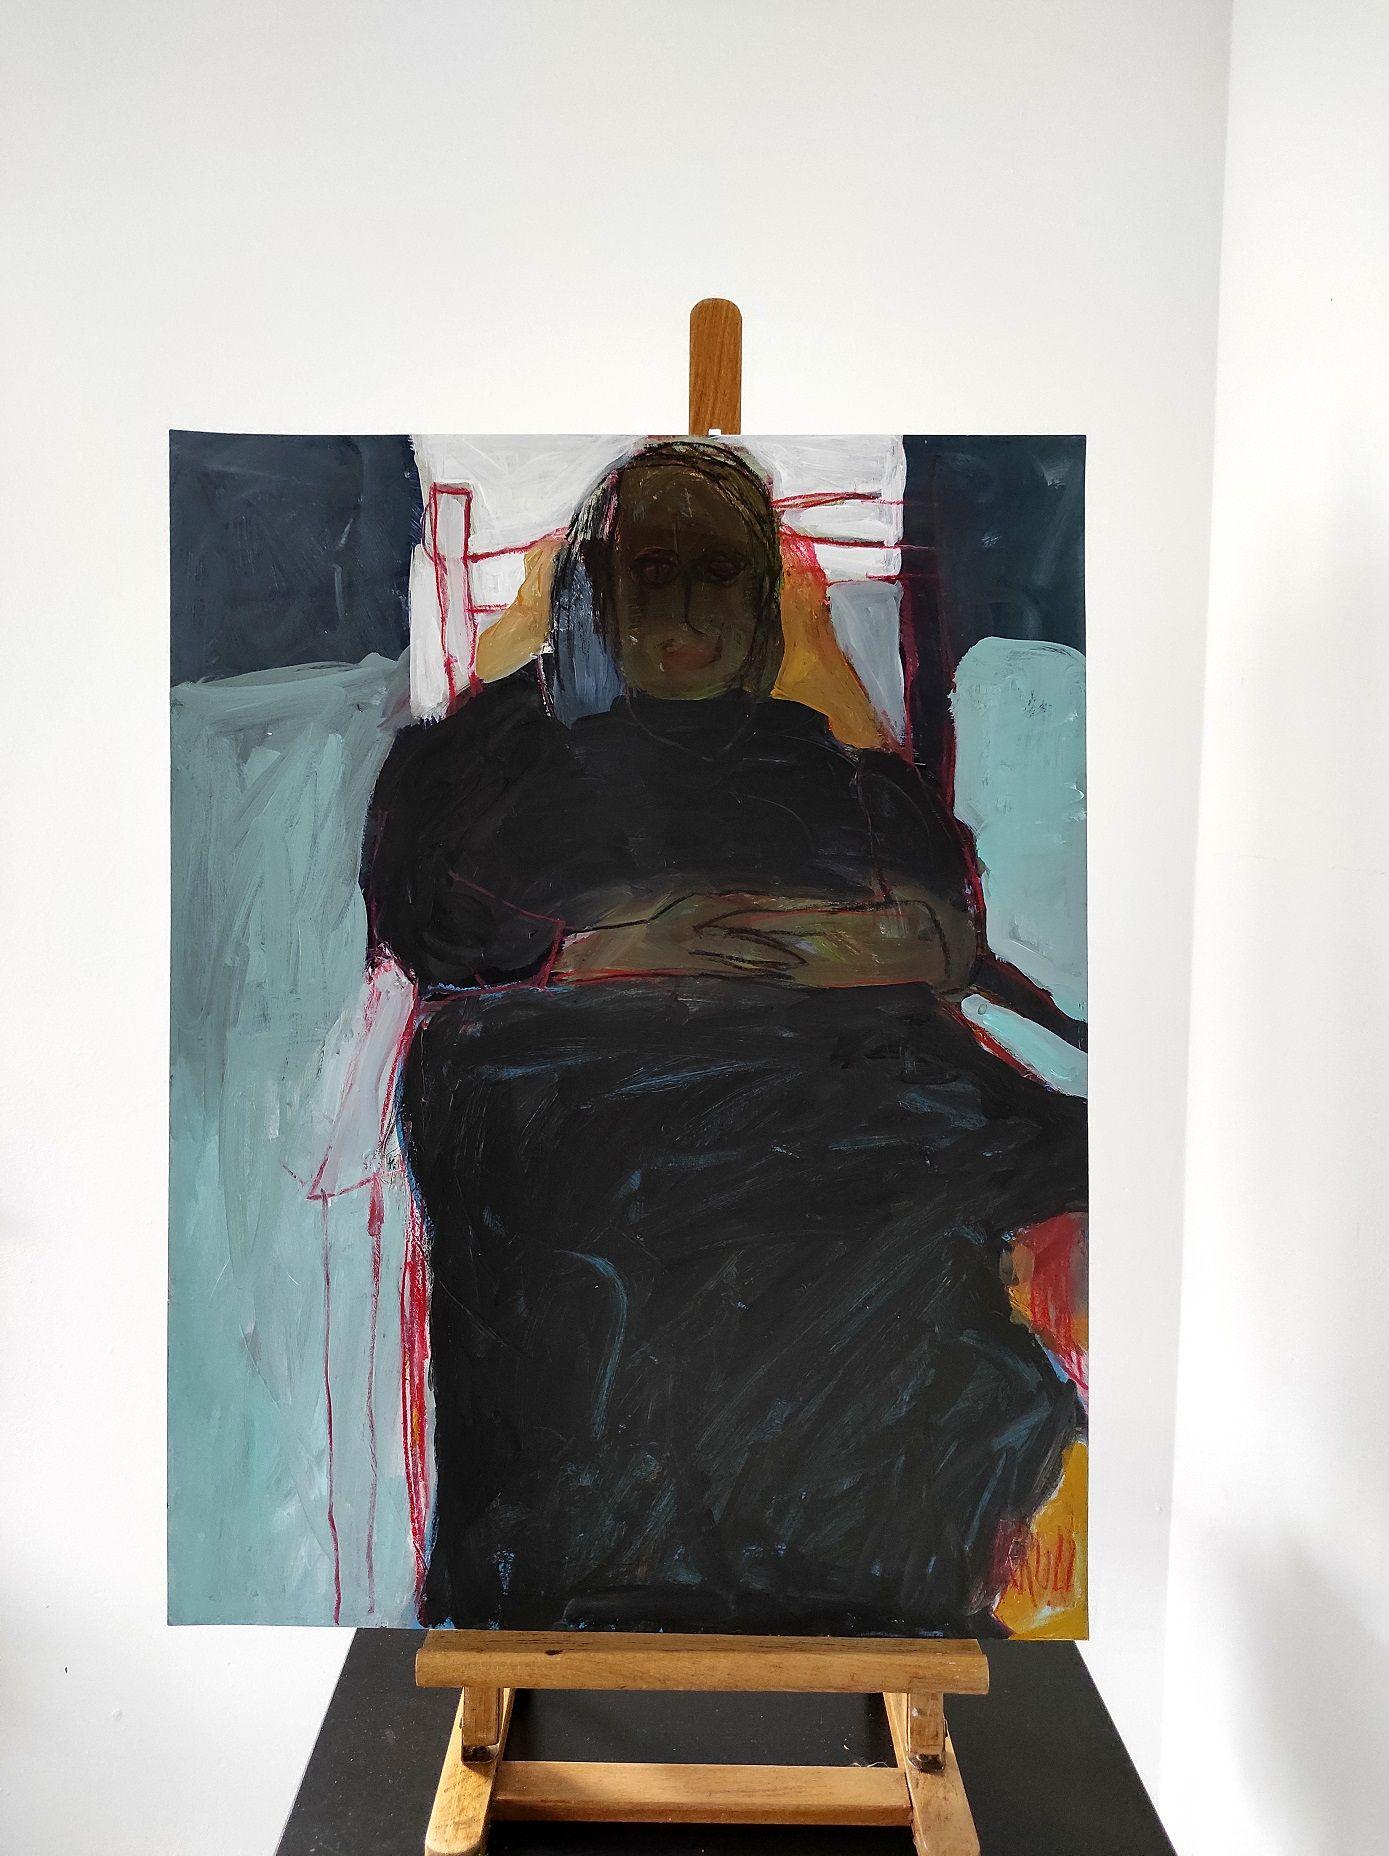 Frau auf dem Sessel, Zeichnung, Bleistift/Farbstift auf Papier (Expressionismus), Art, von Barbara Kroll